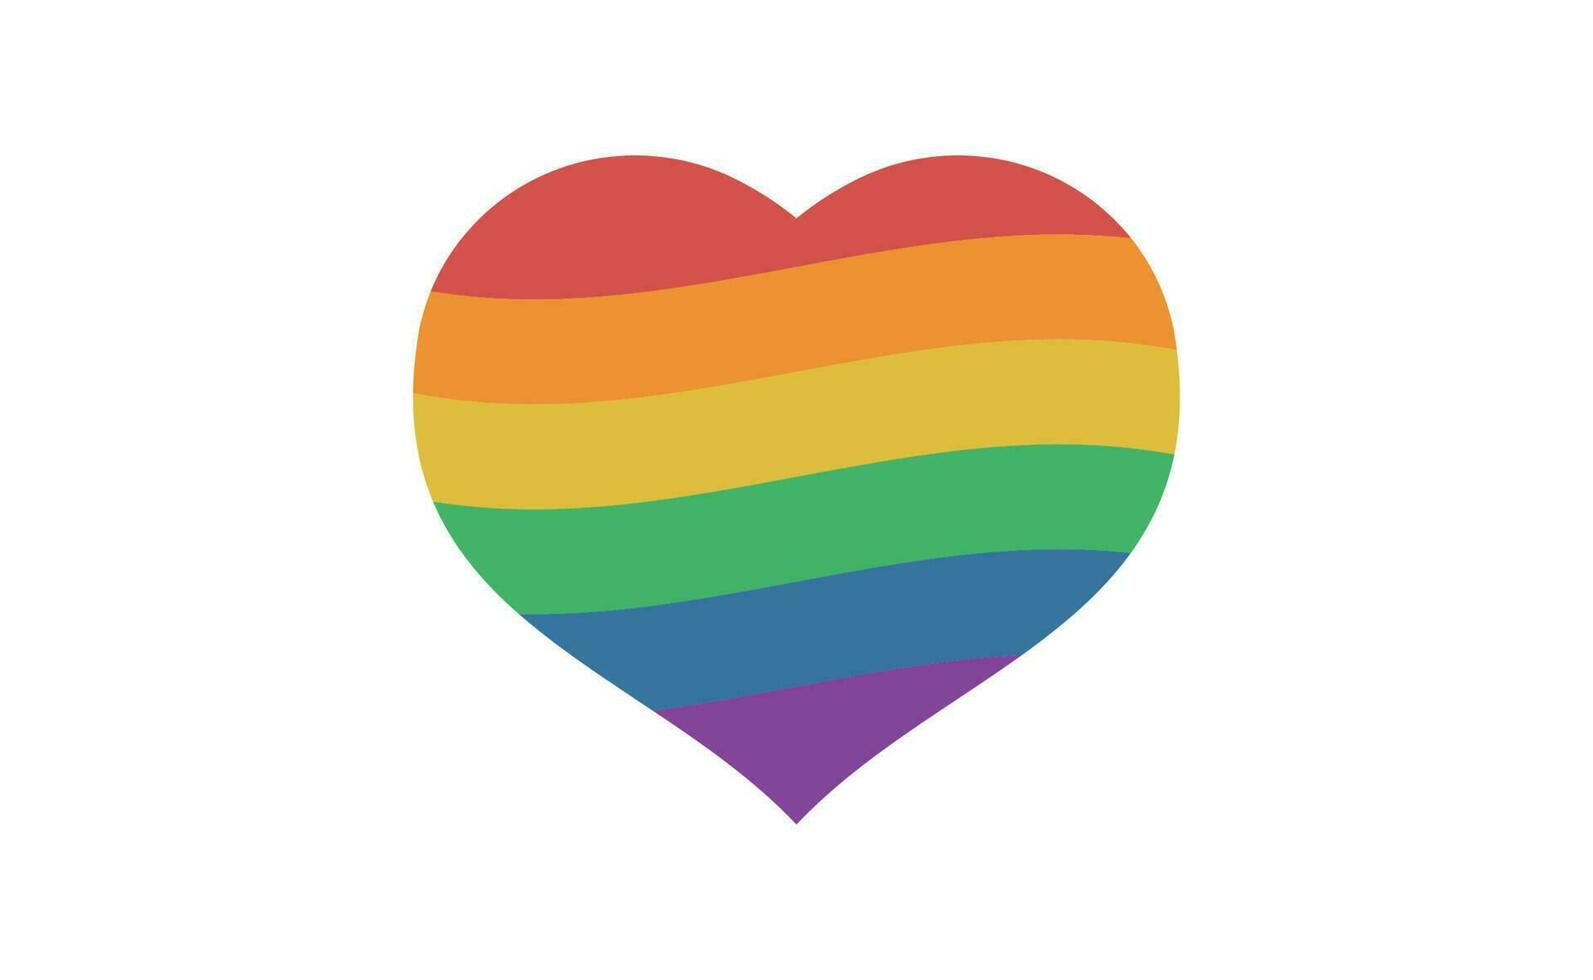 lgbtq trots liefde symbool. hart vormig regenboog vlag hart. verscheidenheid vertegenwoordiging. vector